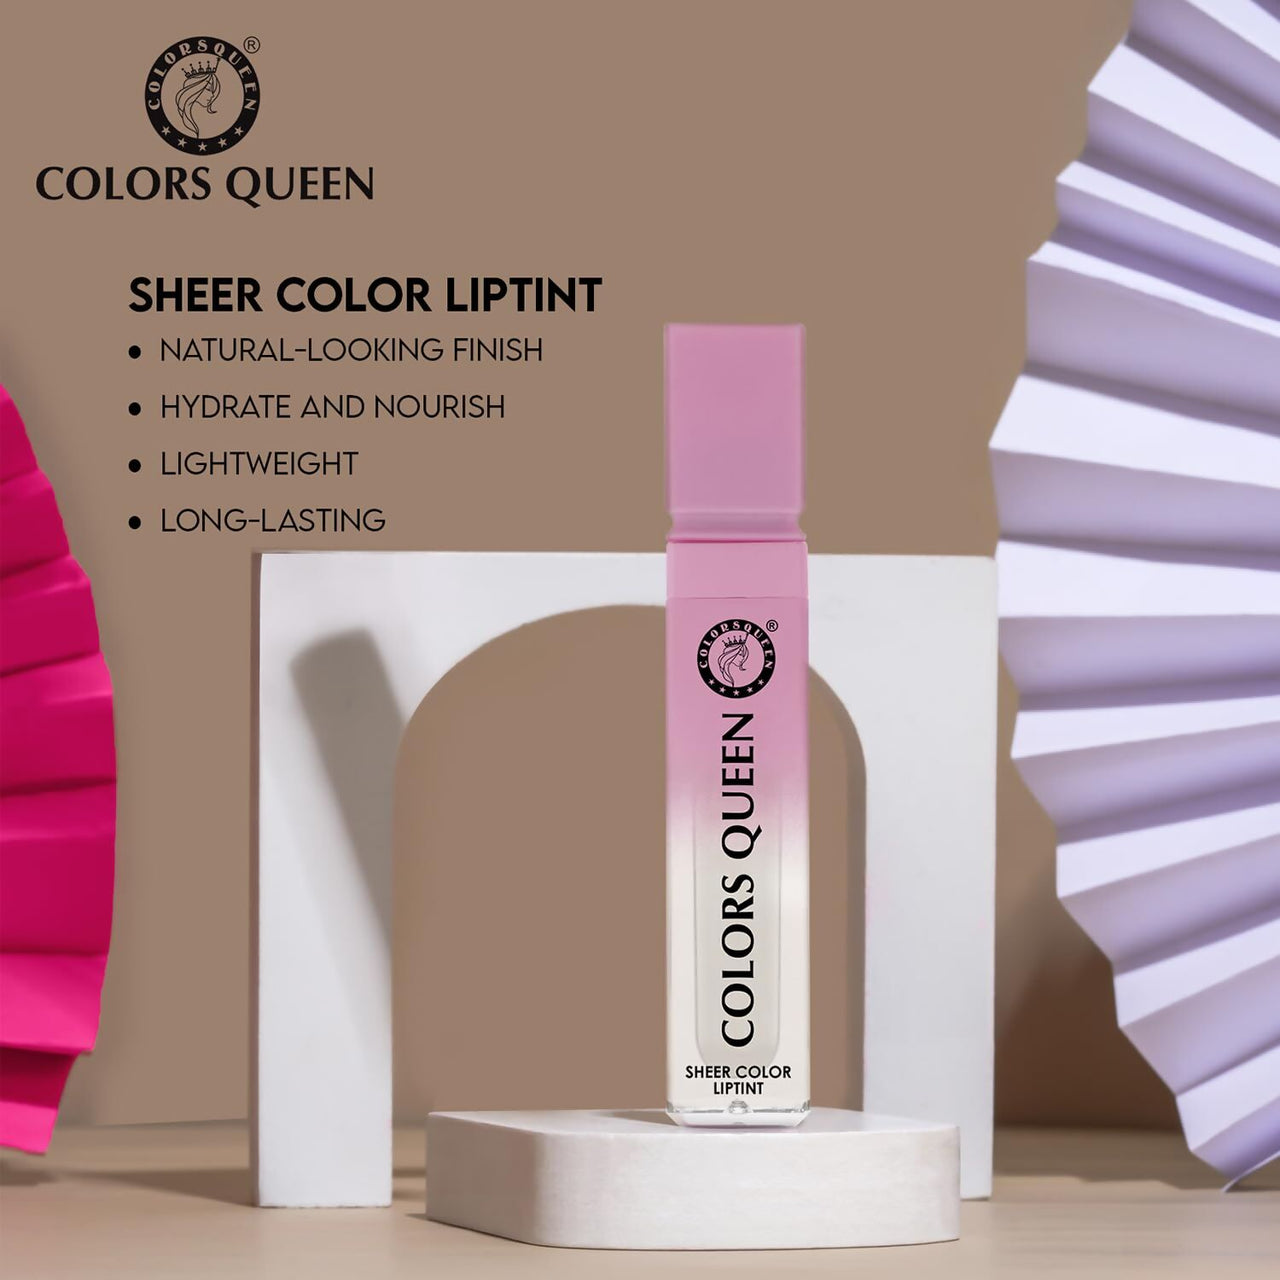 Colors Queen Sheer Color Liquid Lip Tint - Distacart